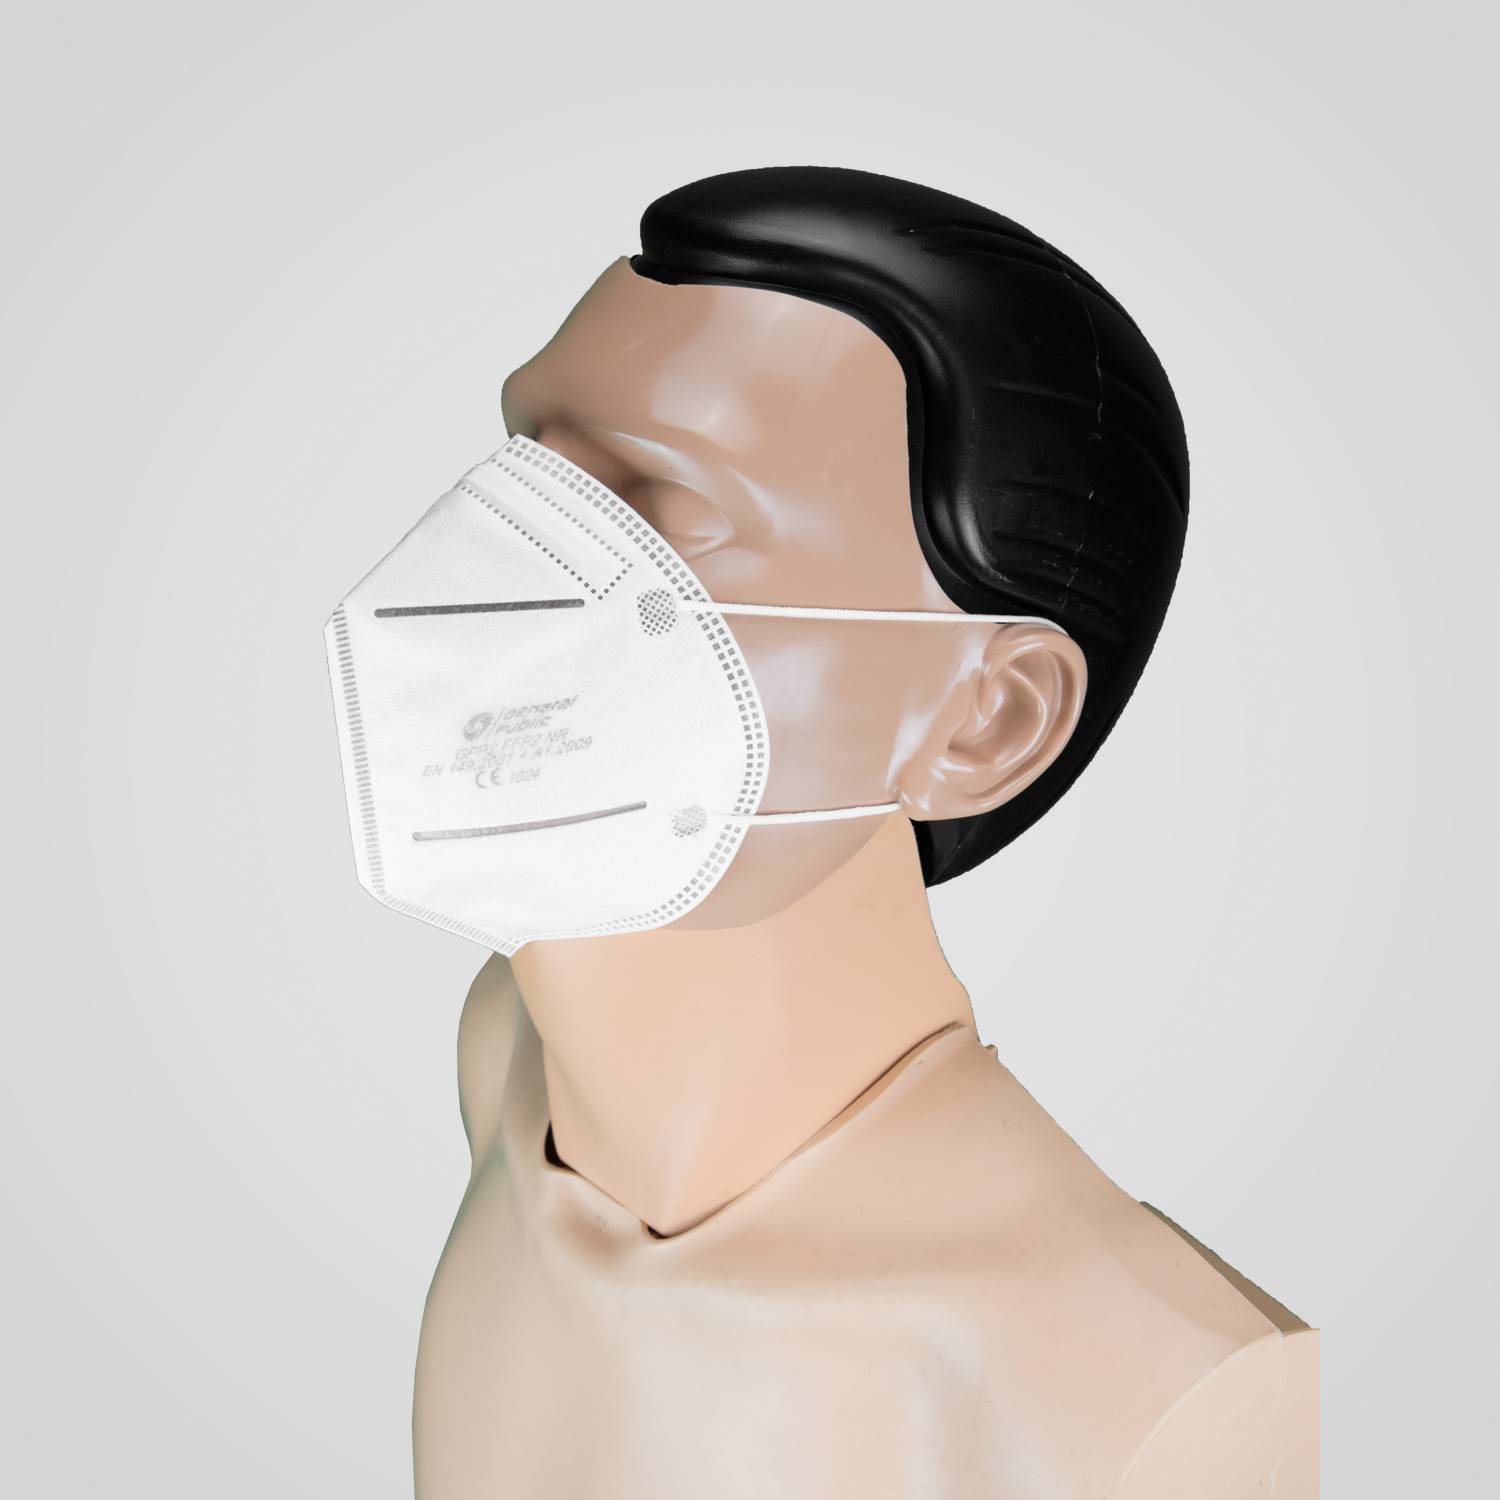 Herzens-Maske - Original Premium-FFP2-Maske für eine Herzens-Organisation  der Wahl